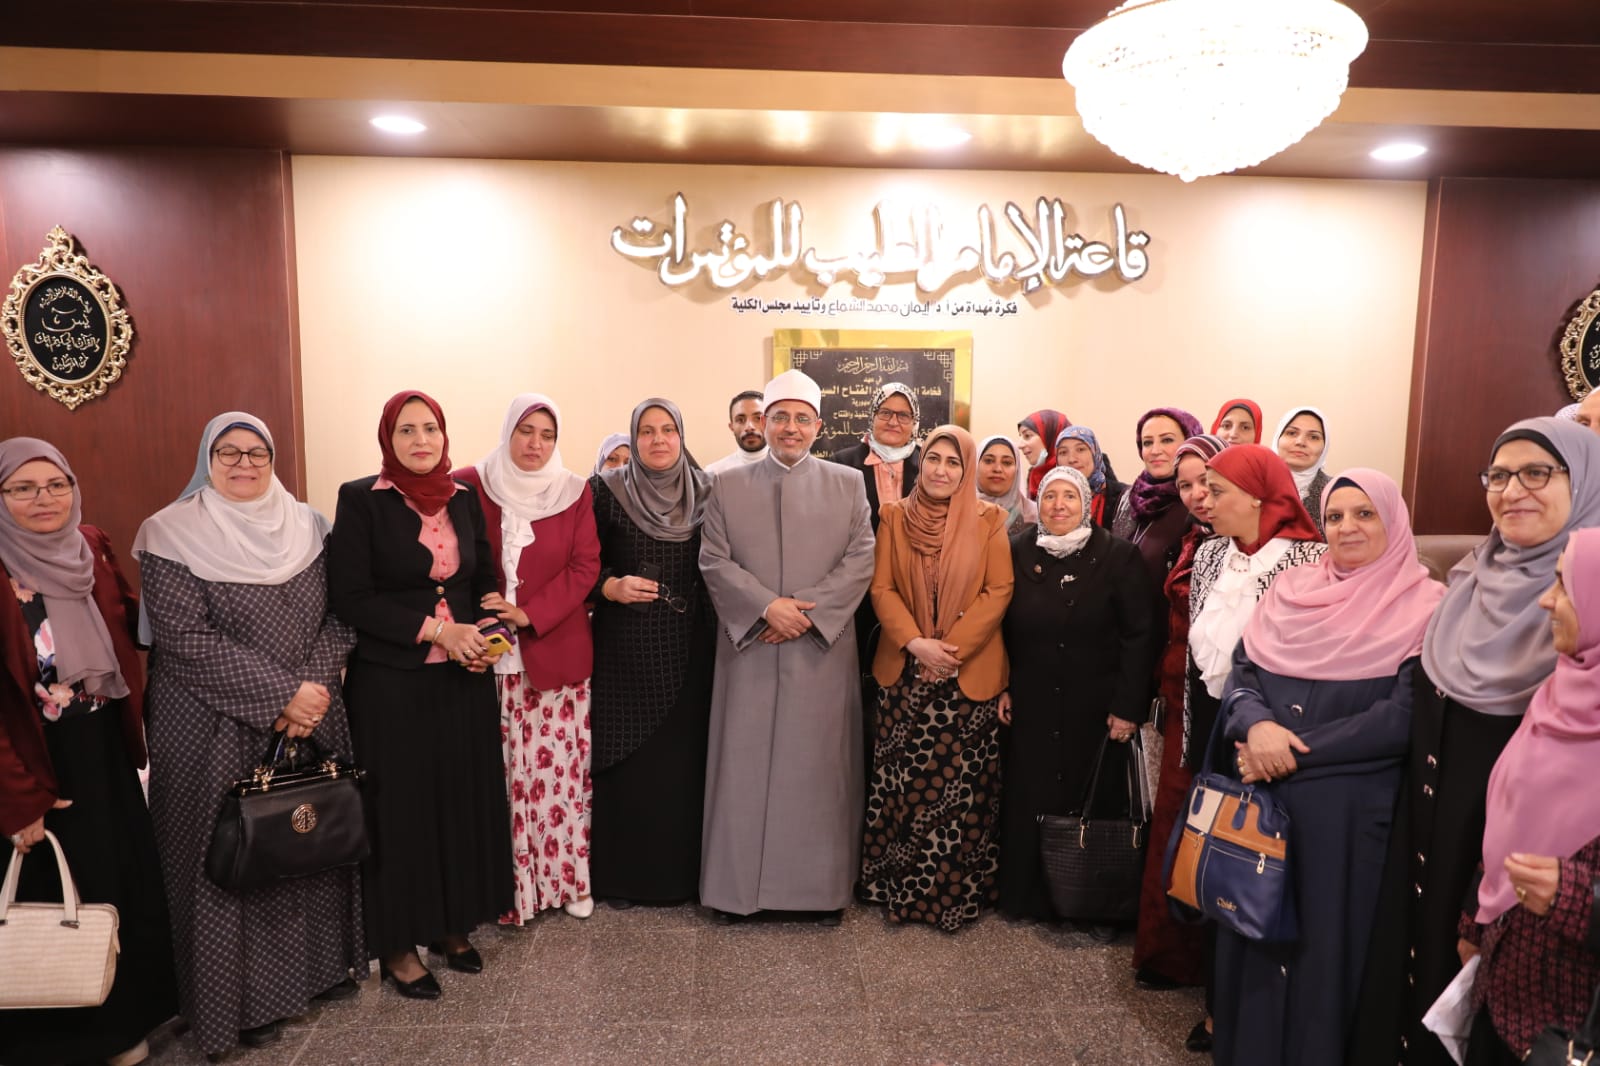 رئيس جامعة الأزهر يشيد بكلية الدراسات الإسلامية والعربية للبنات بالإسكندرية كلية معتمدة